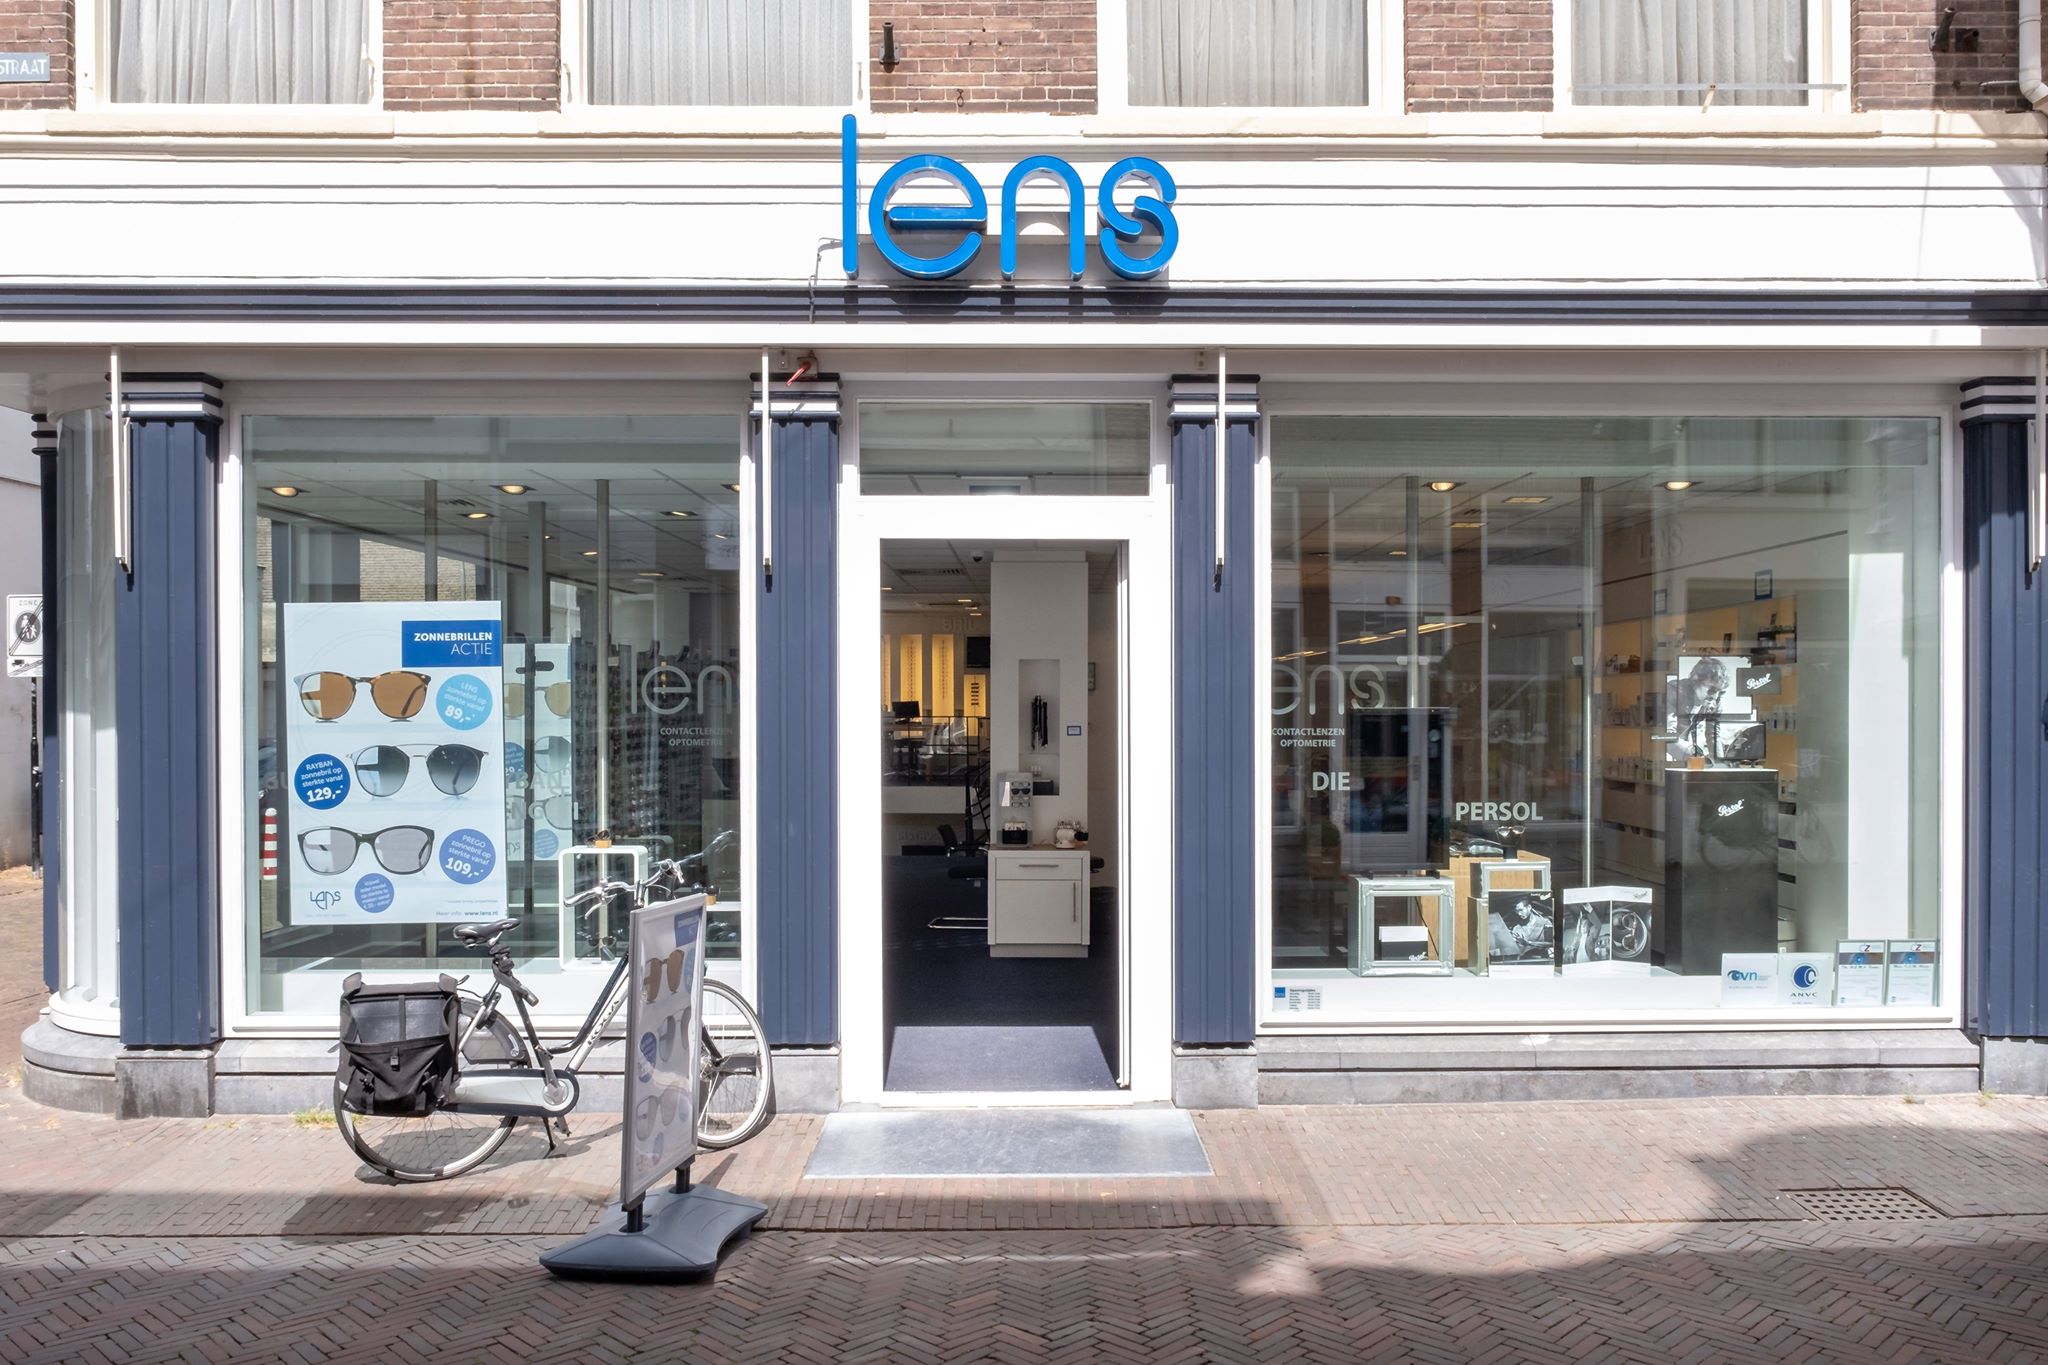 Lens en meer winkels in Deventer vind je bij Shoppen in Deventer